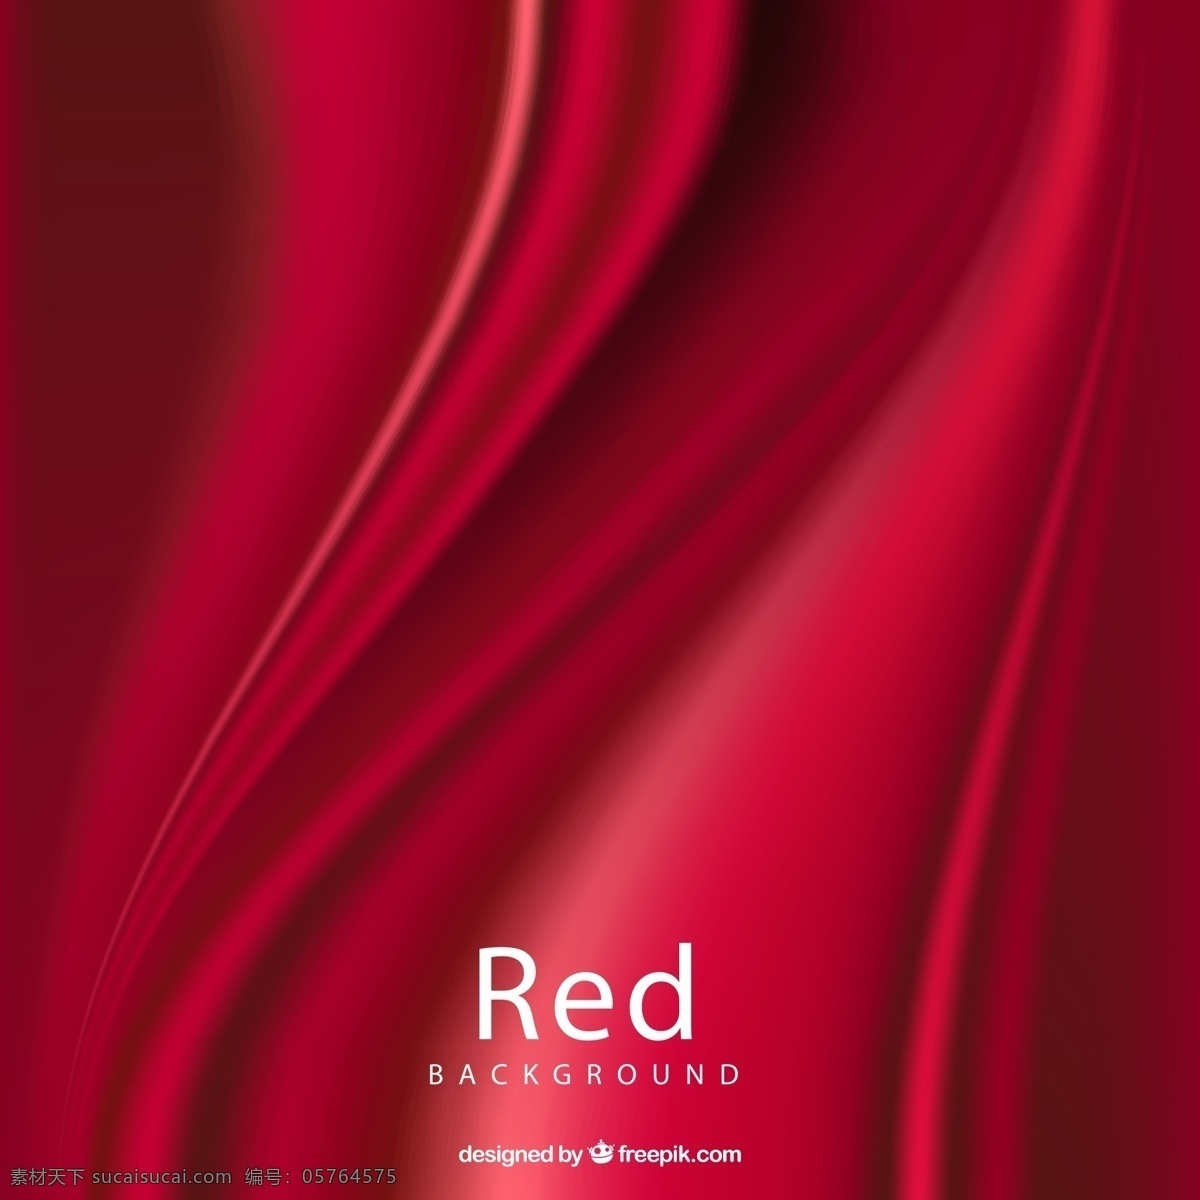 红色 绸布 背景图片 褶皱 背景 矢量图 格式 矢量 高清图片